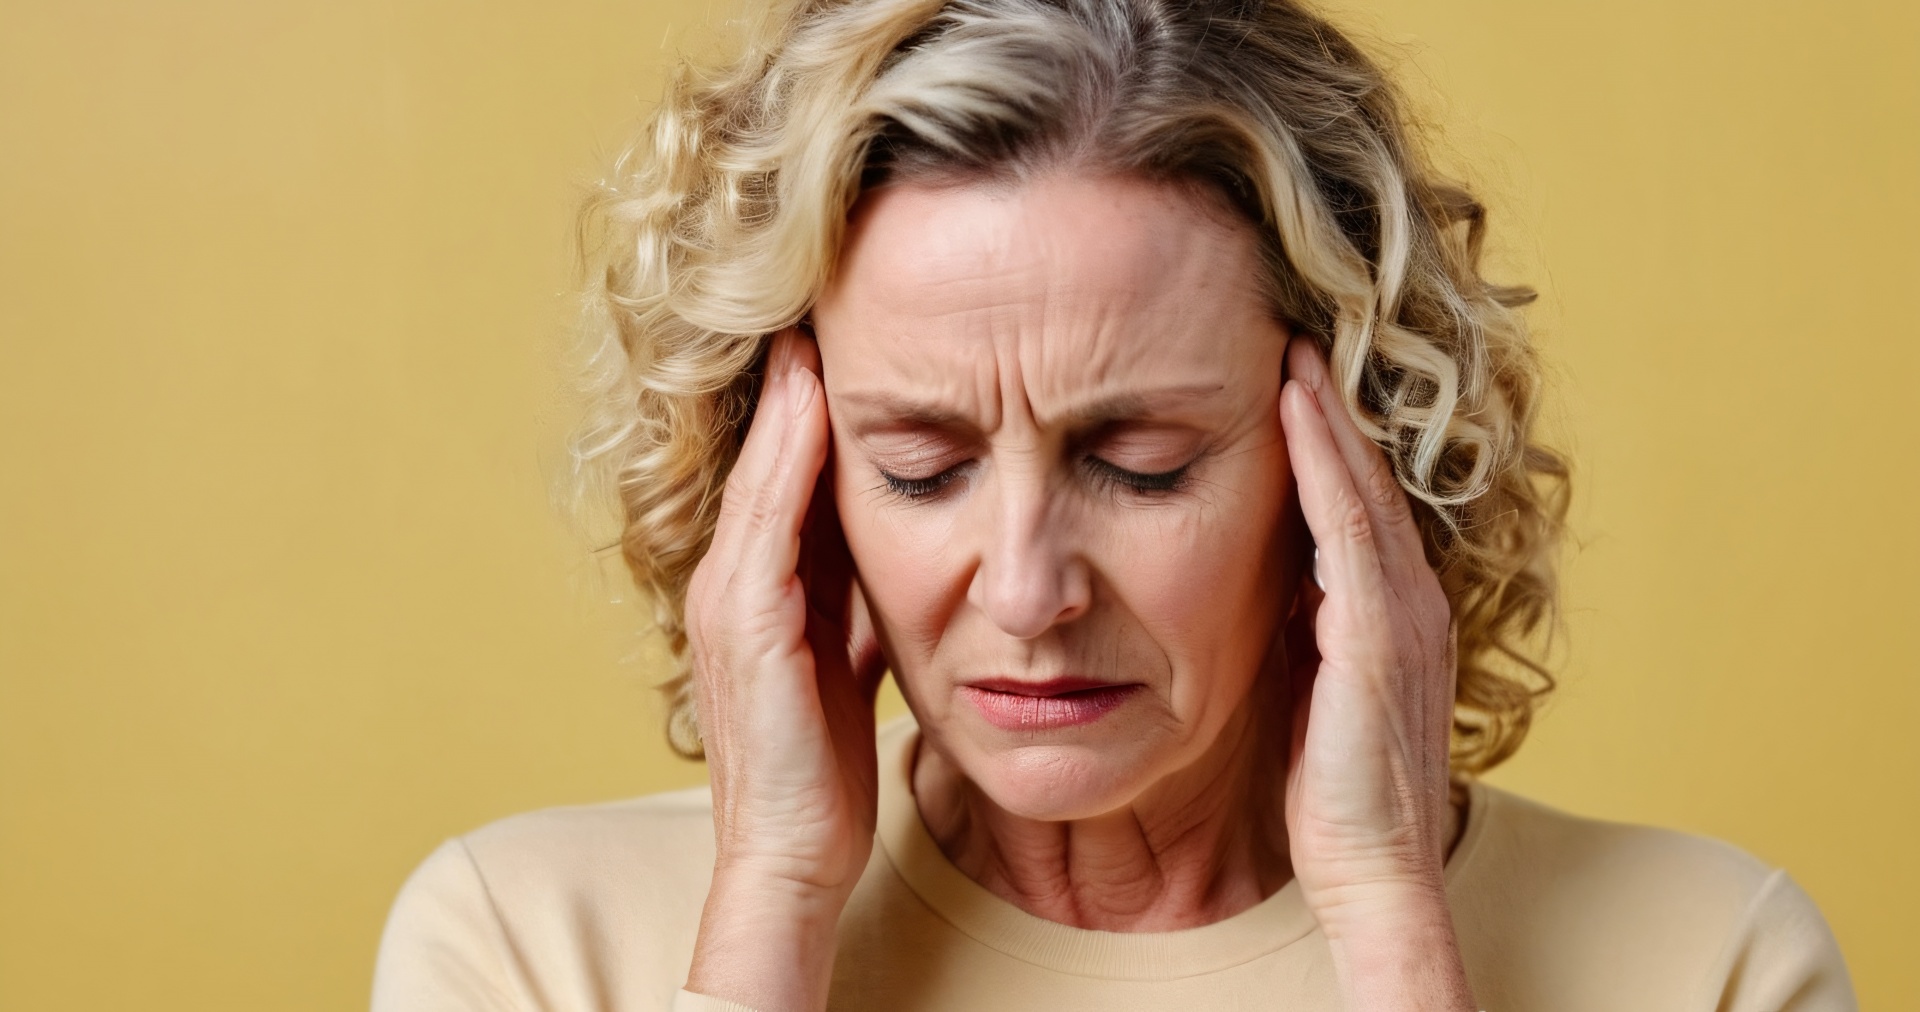 Woman With Migraine Headache